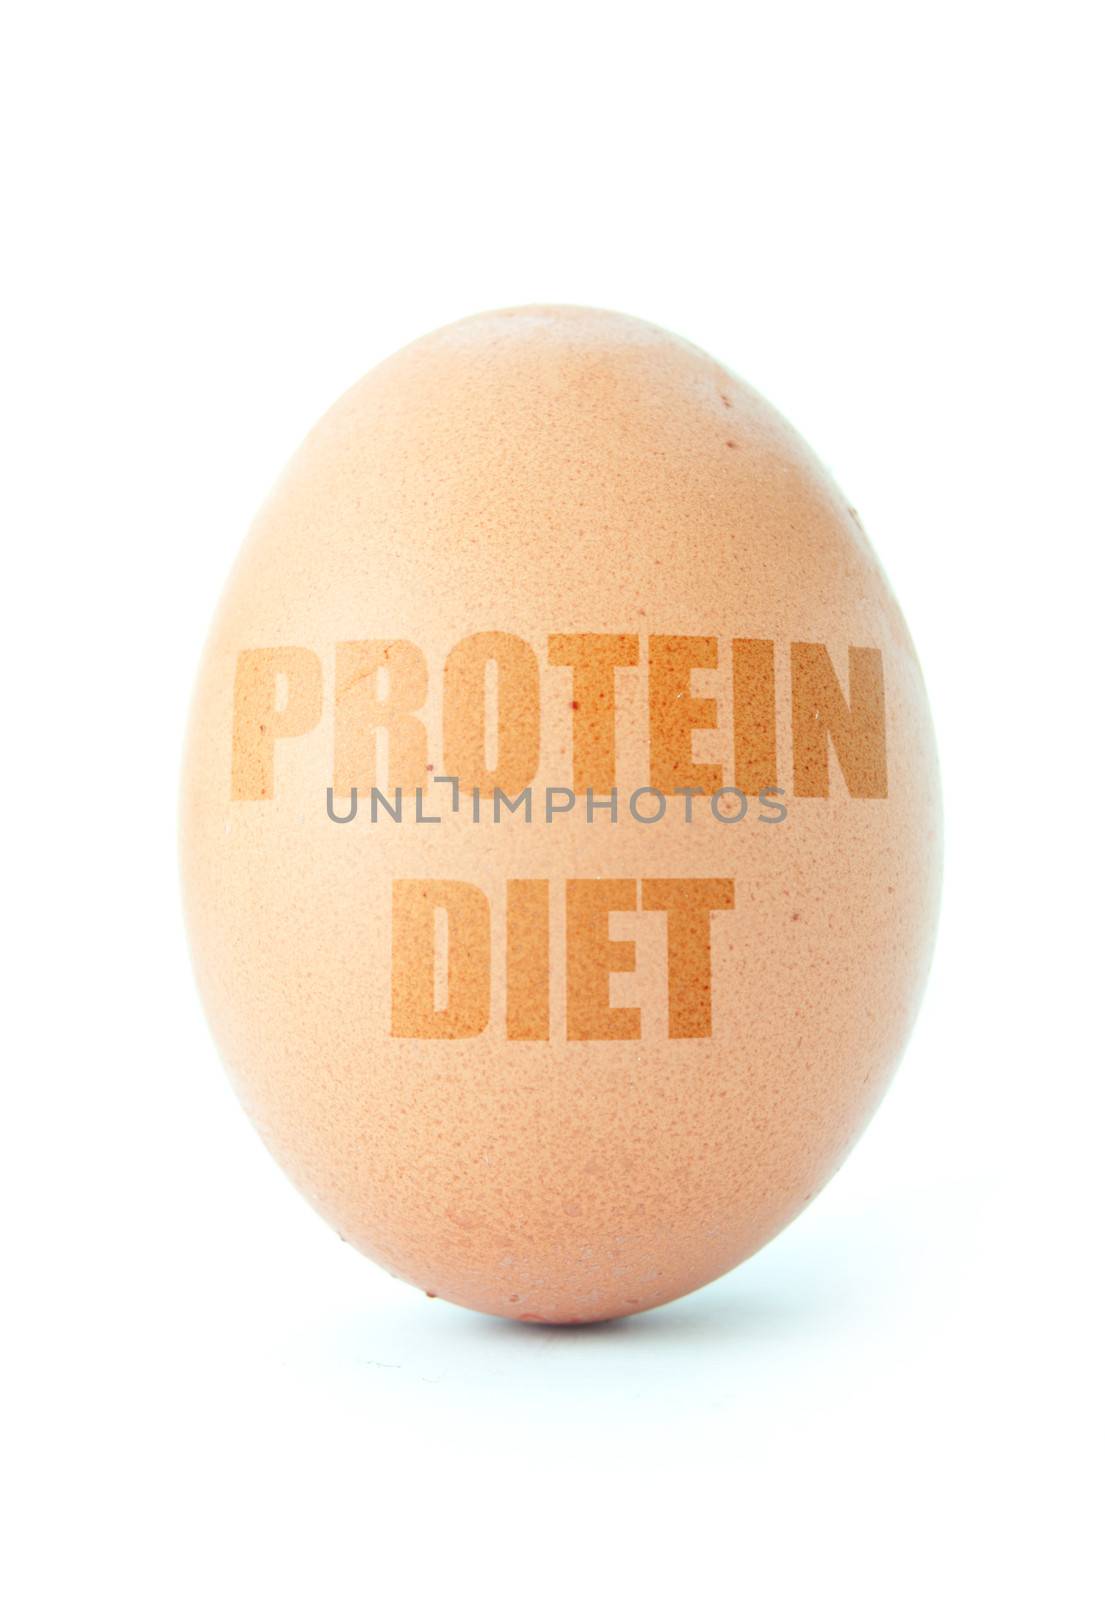 Protein diet  by unikpix